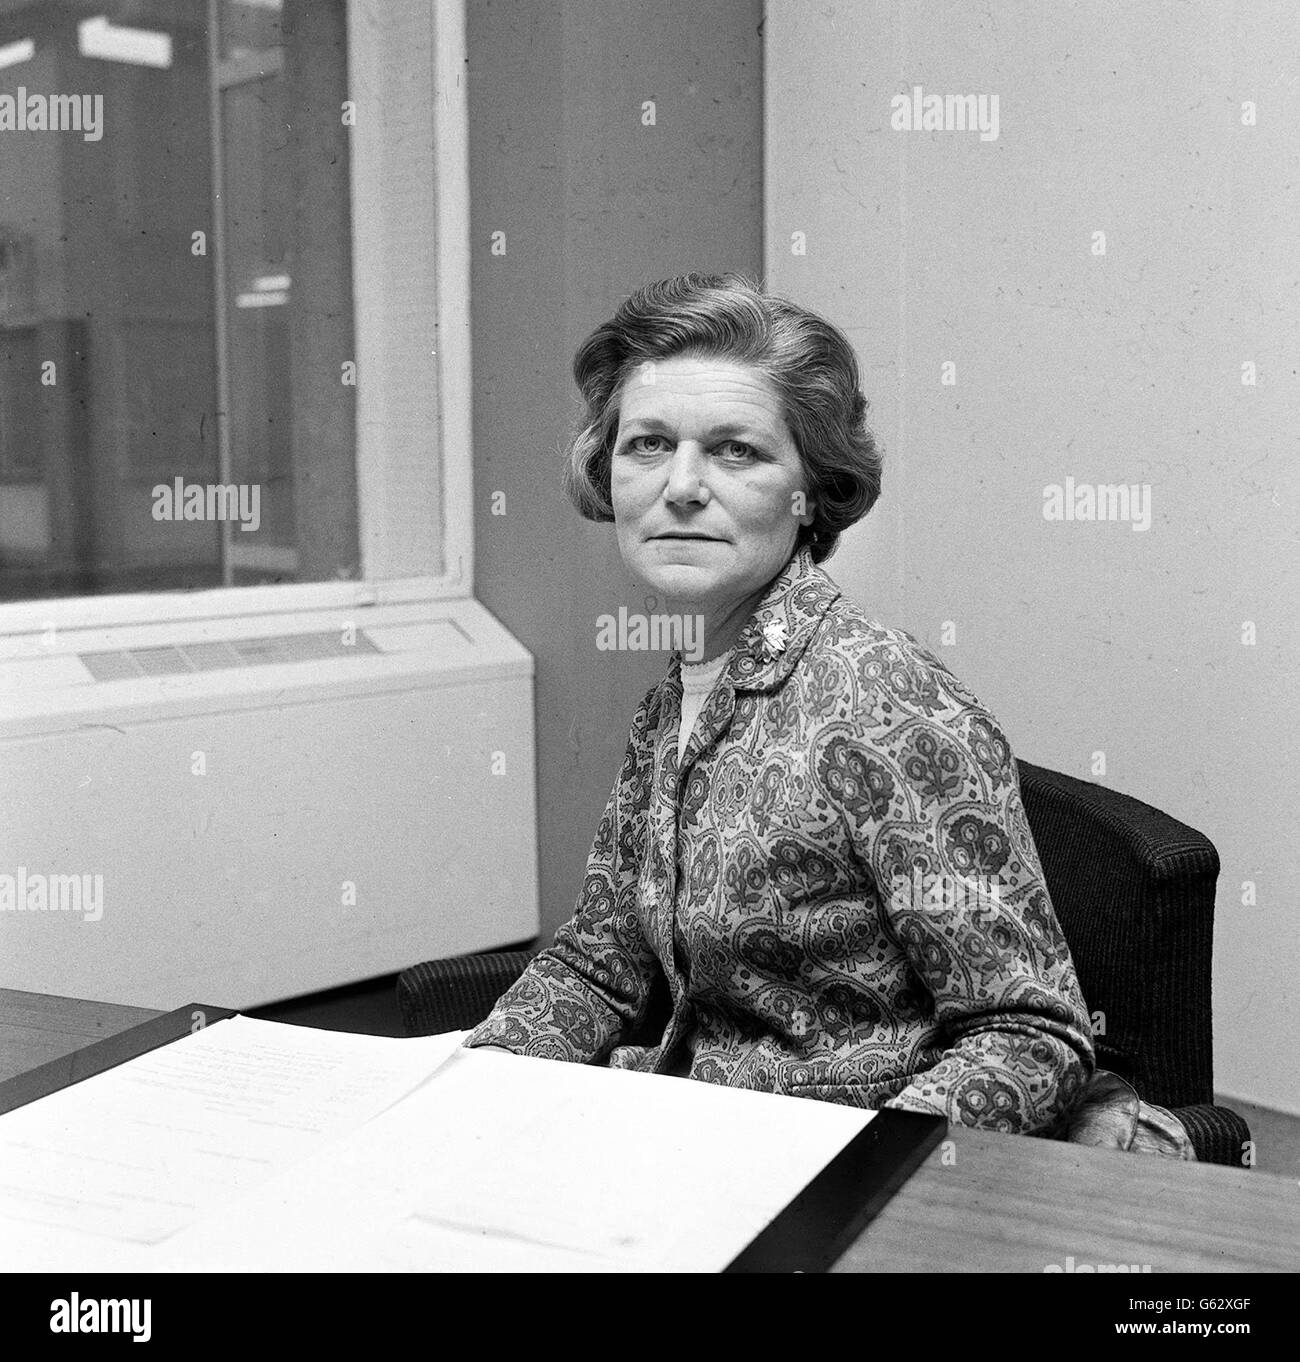 Baronne Serota, 49 ans, la nouvelle ministre d'État, Département de la santé et de la sécurité sociale, a photographié dans les bureaux du Ministère, Alexandra Fleming House, Londres. Lady Serota dont le nom de jeune fille était Beatrice Katz. Elle a été créée en 1967. Banque D'Images